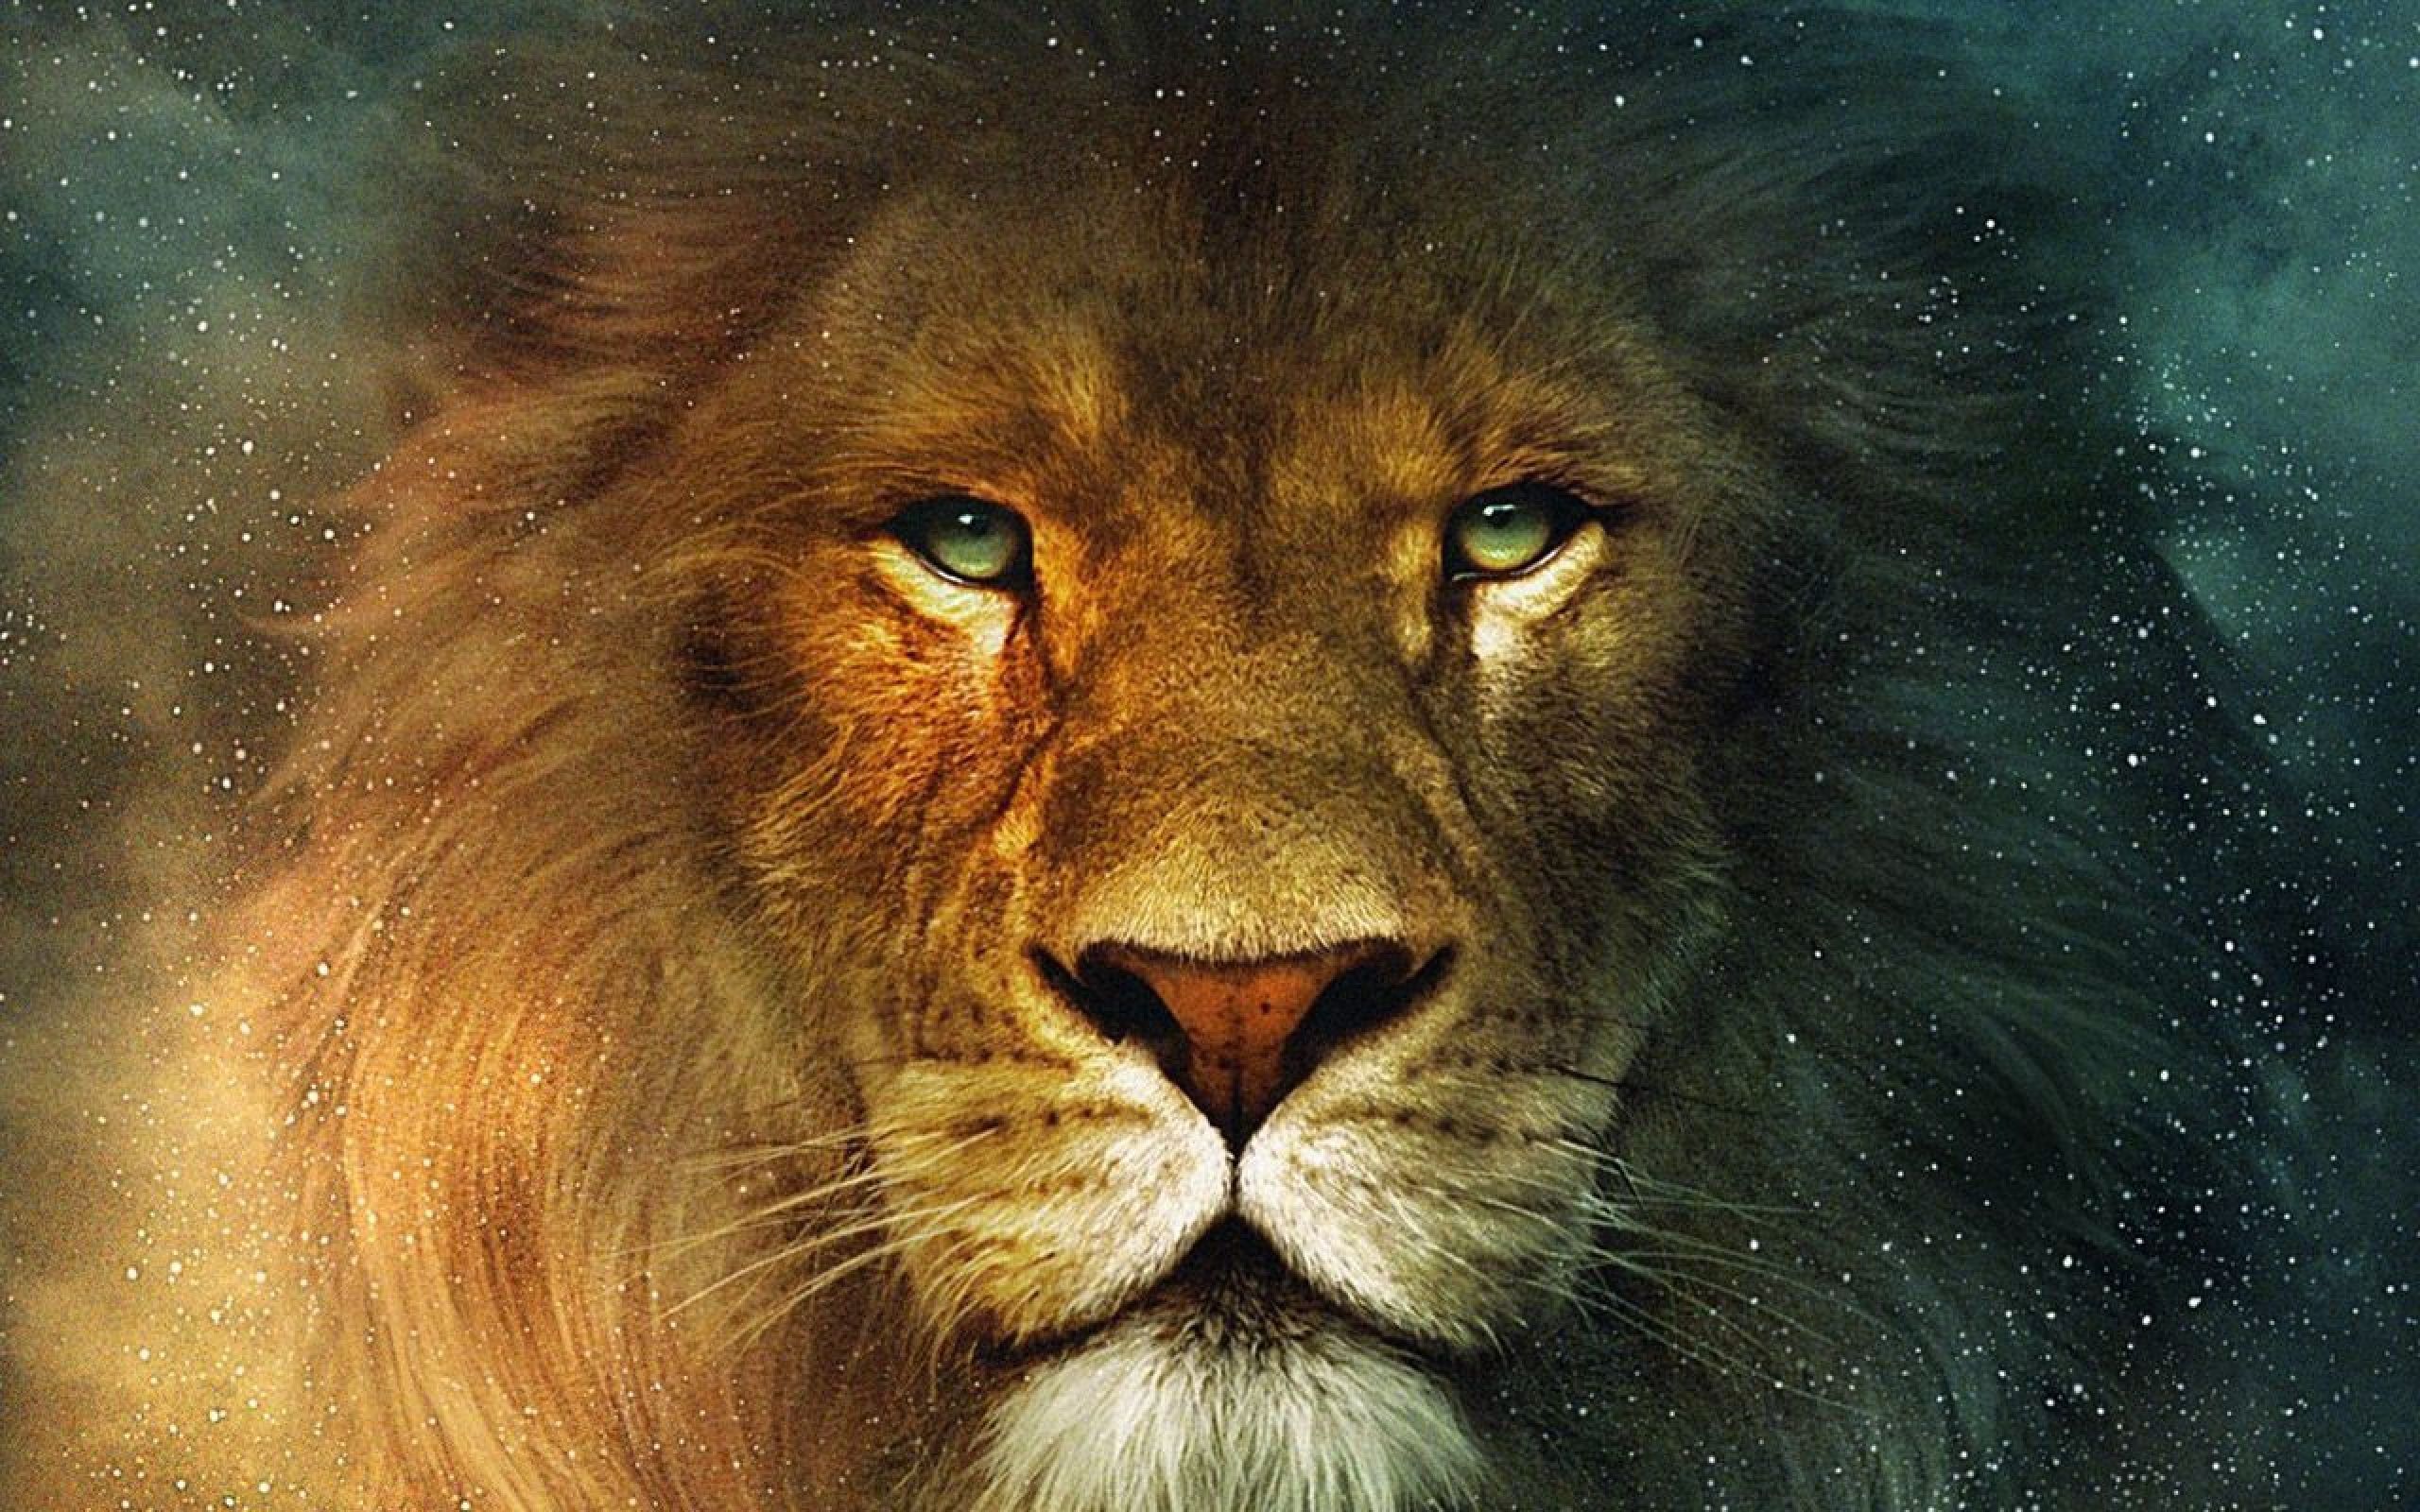 Qua hình ảnh sư tử 3D, bạn sẽ được trải nghiệm một thế giới hoang dã rộng lớn, cưỡi trên lưng vua thú và khám phá những điều mới lạ khó ai có được. Hãy thưởng thức và ngắm nhìn hình ảnh sống động này ngay!